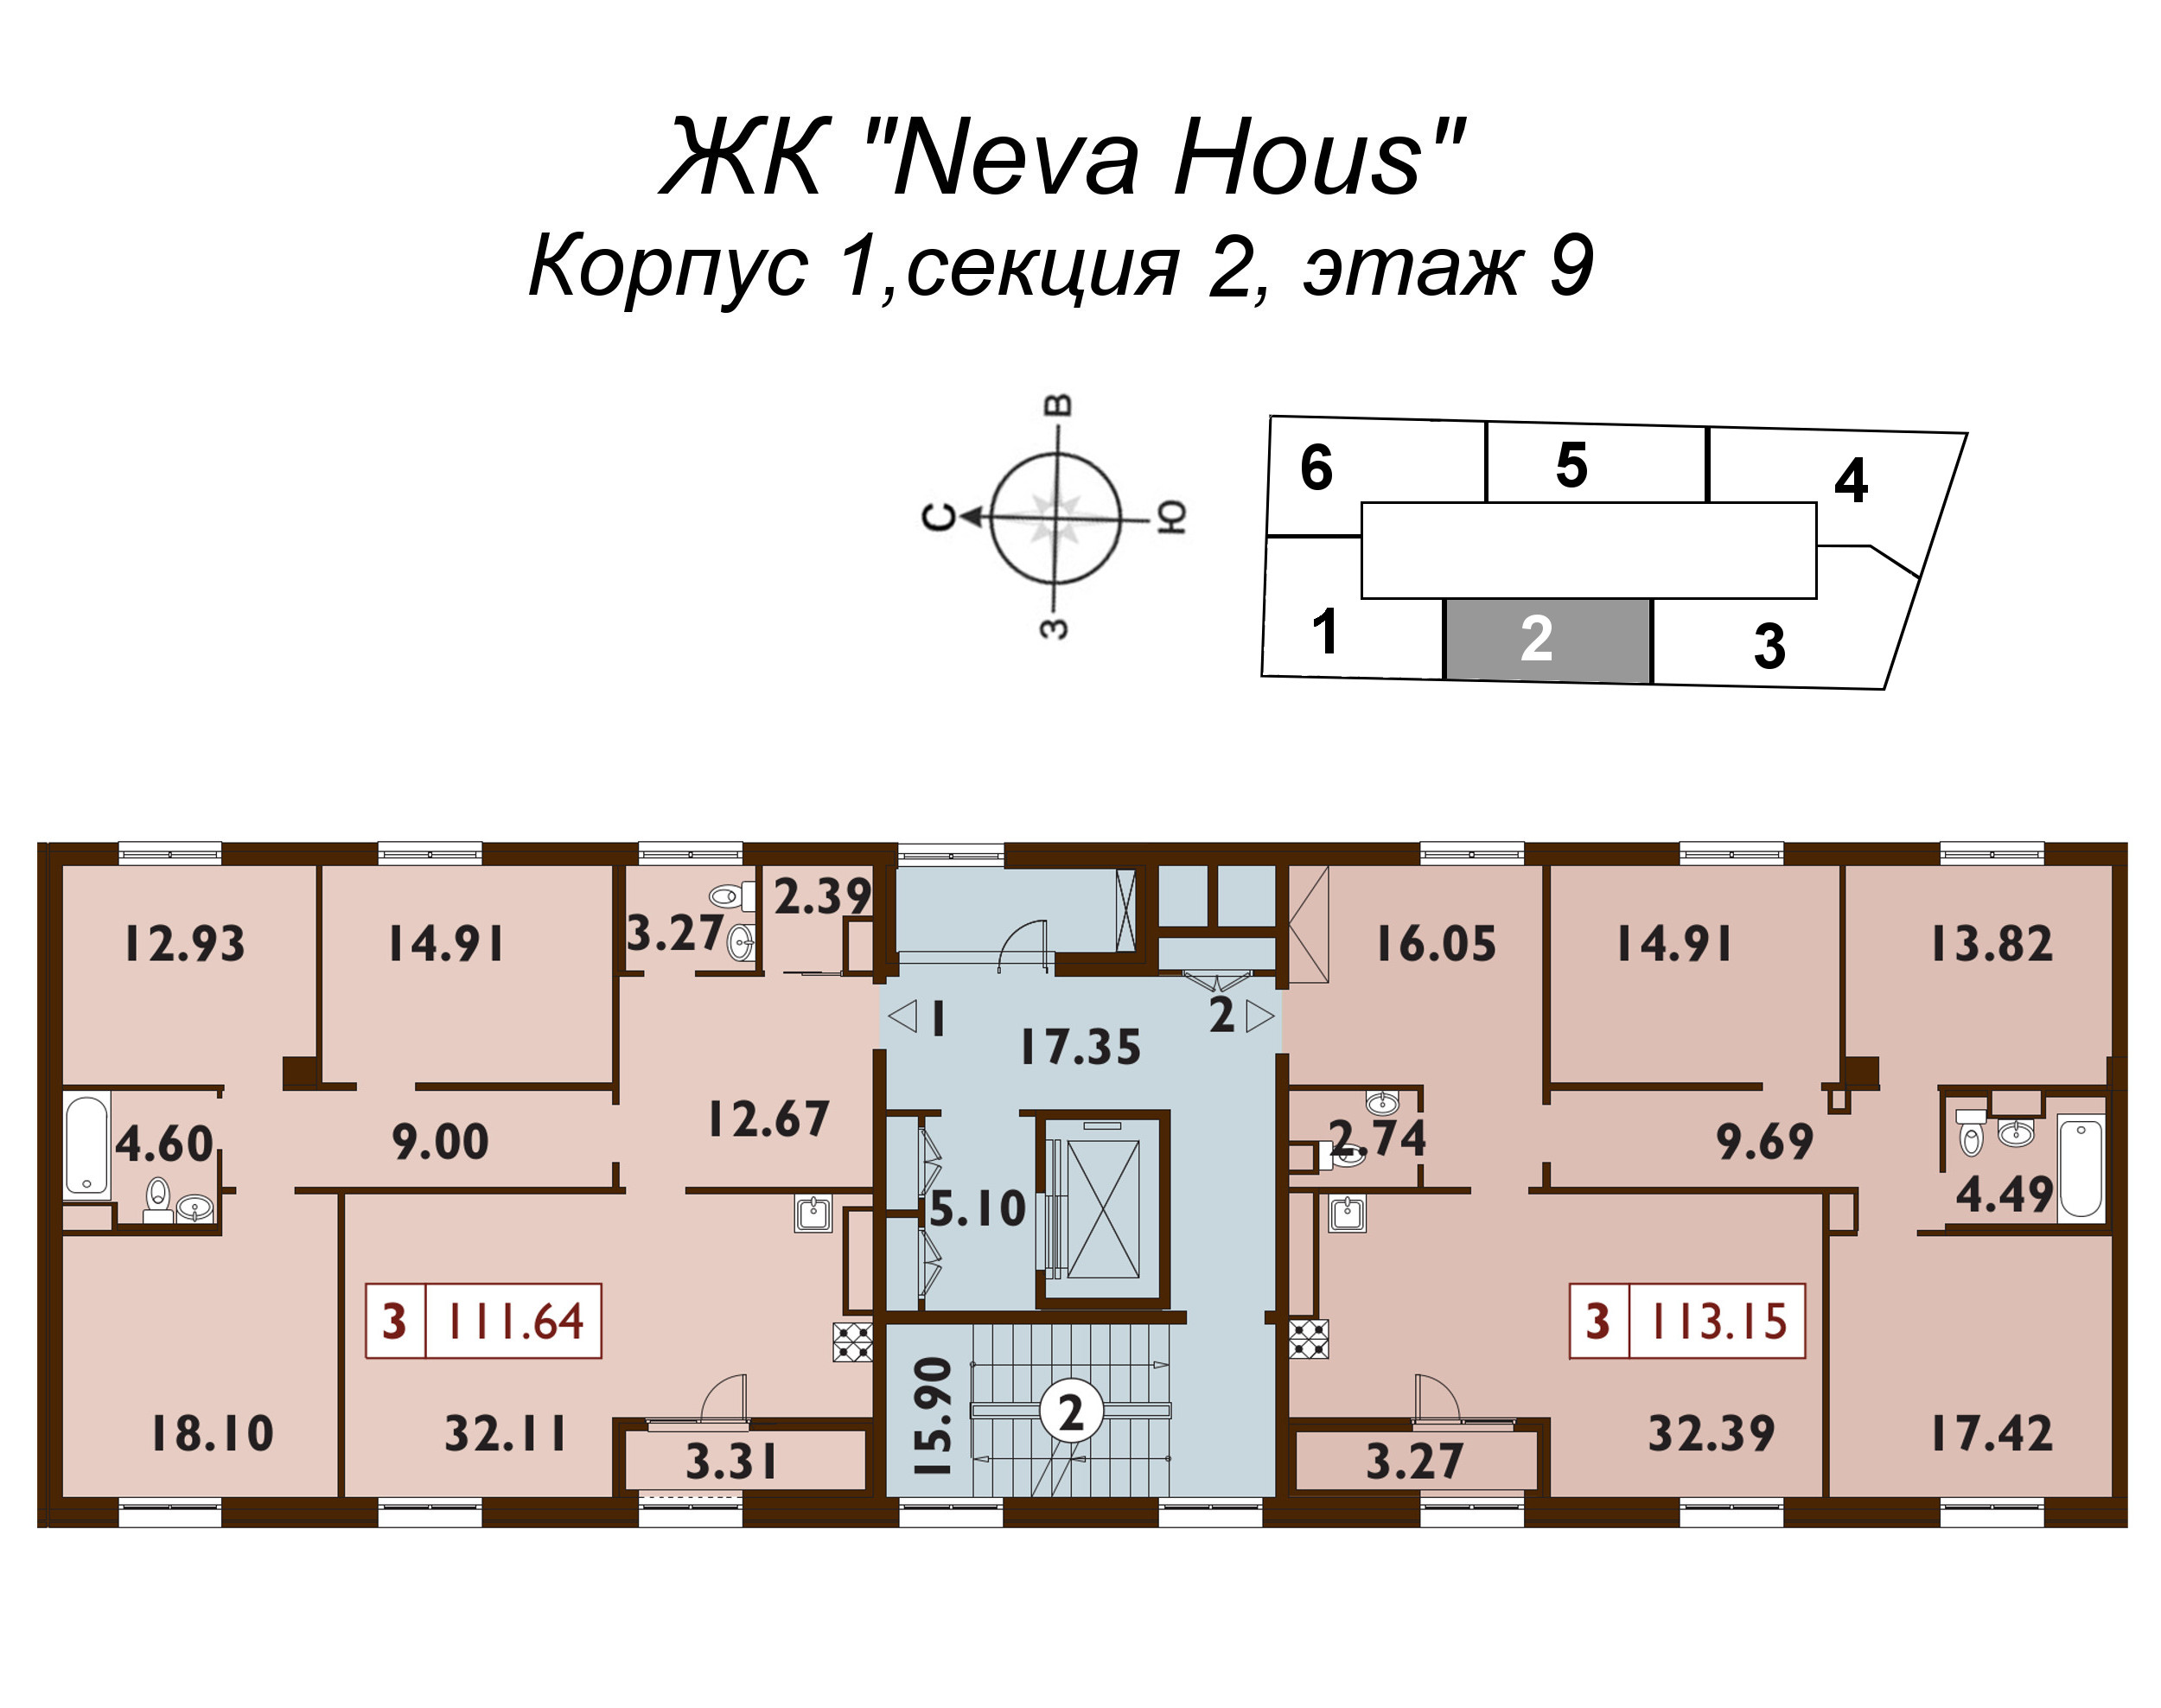 4-комнатная (Евро) квартира, 113.6 м² в ЖК "Neva Haus" - планировка этажа